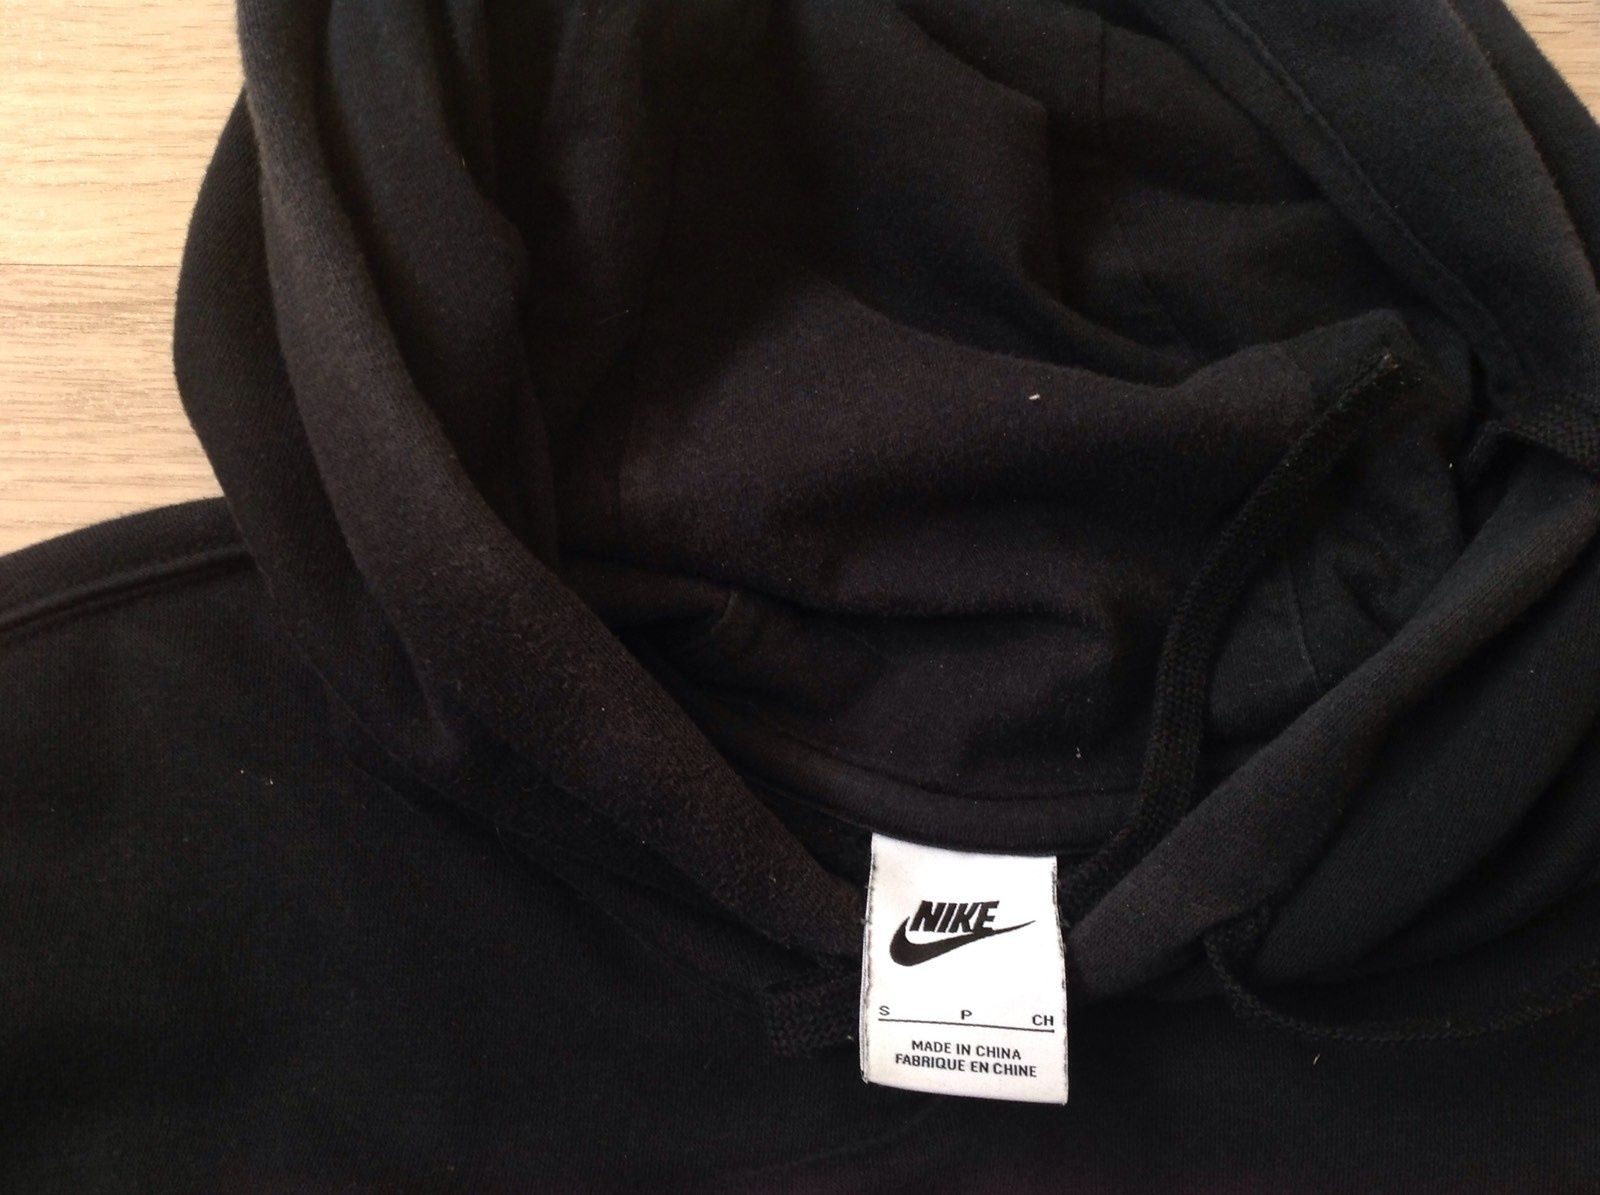 Продам спортивный костюм Nike в идеальном состоянии, оригинал,размер S